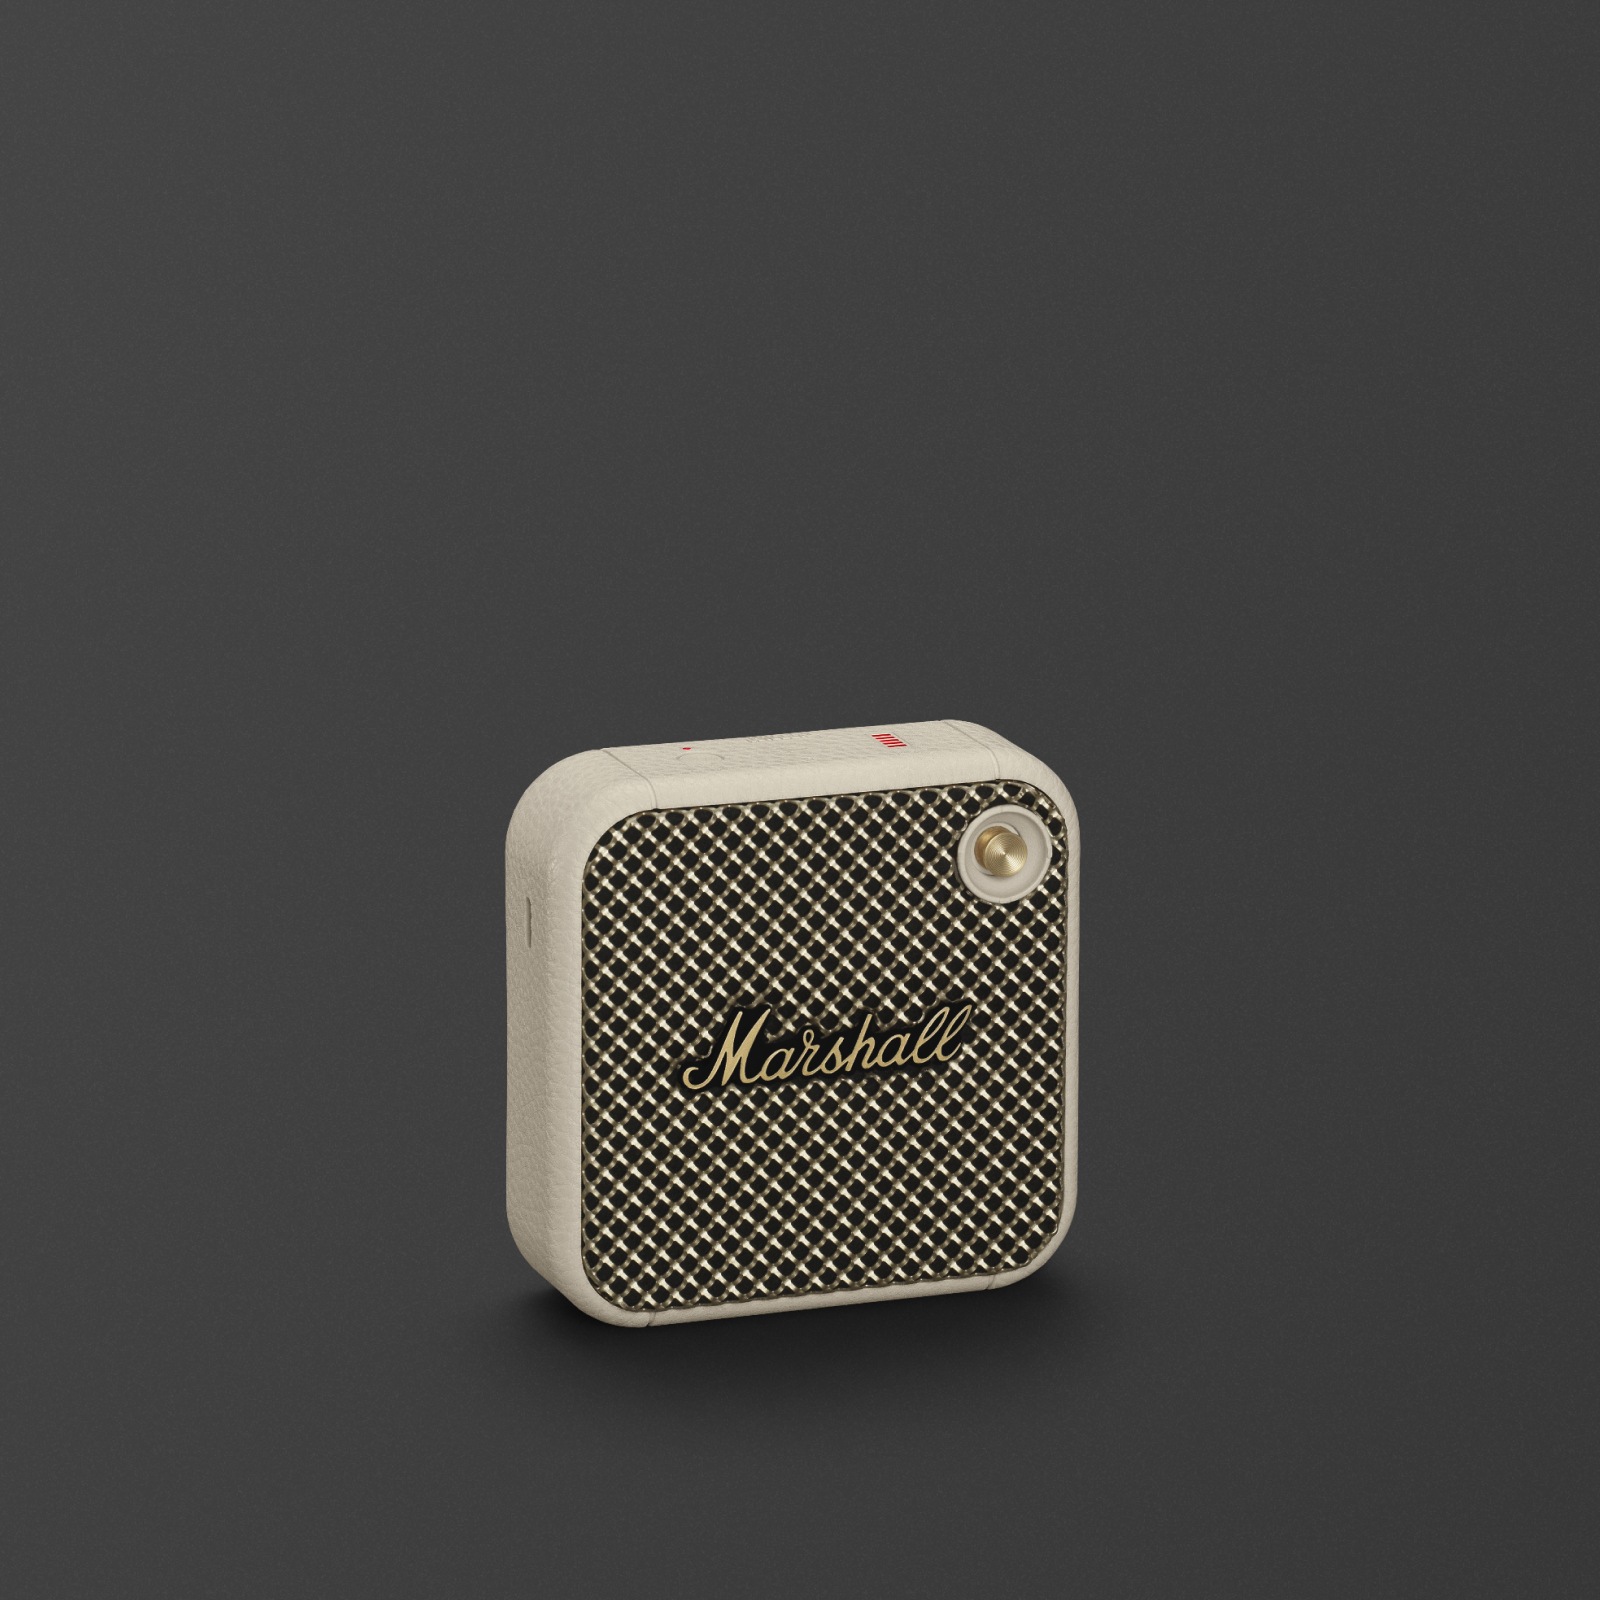 The Marshall Willen Cream is a sleek black & white wireless speaker.